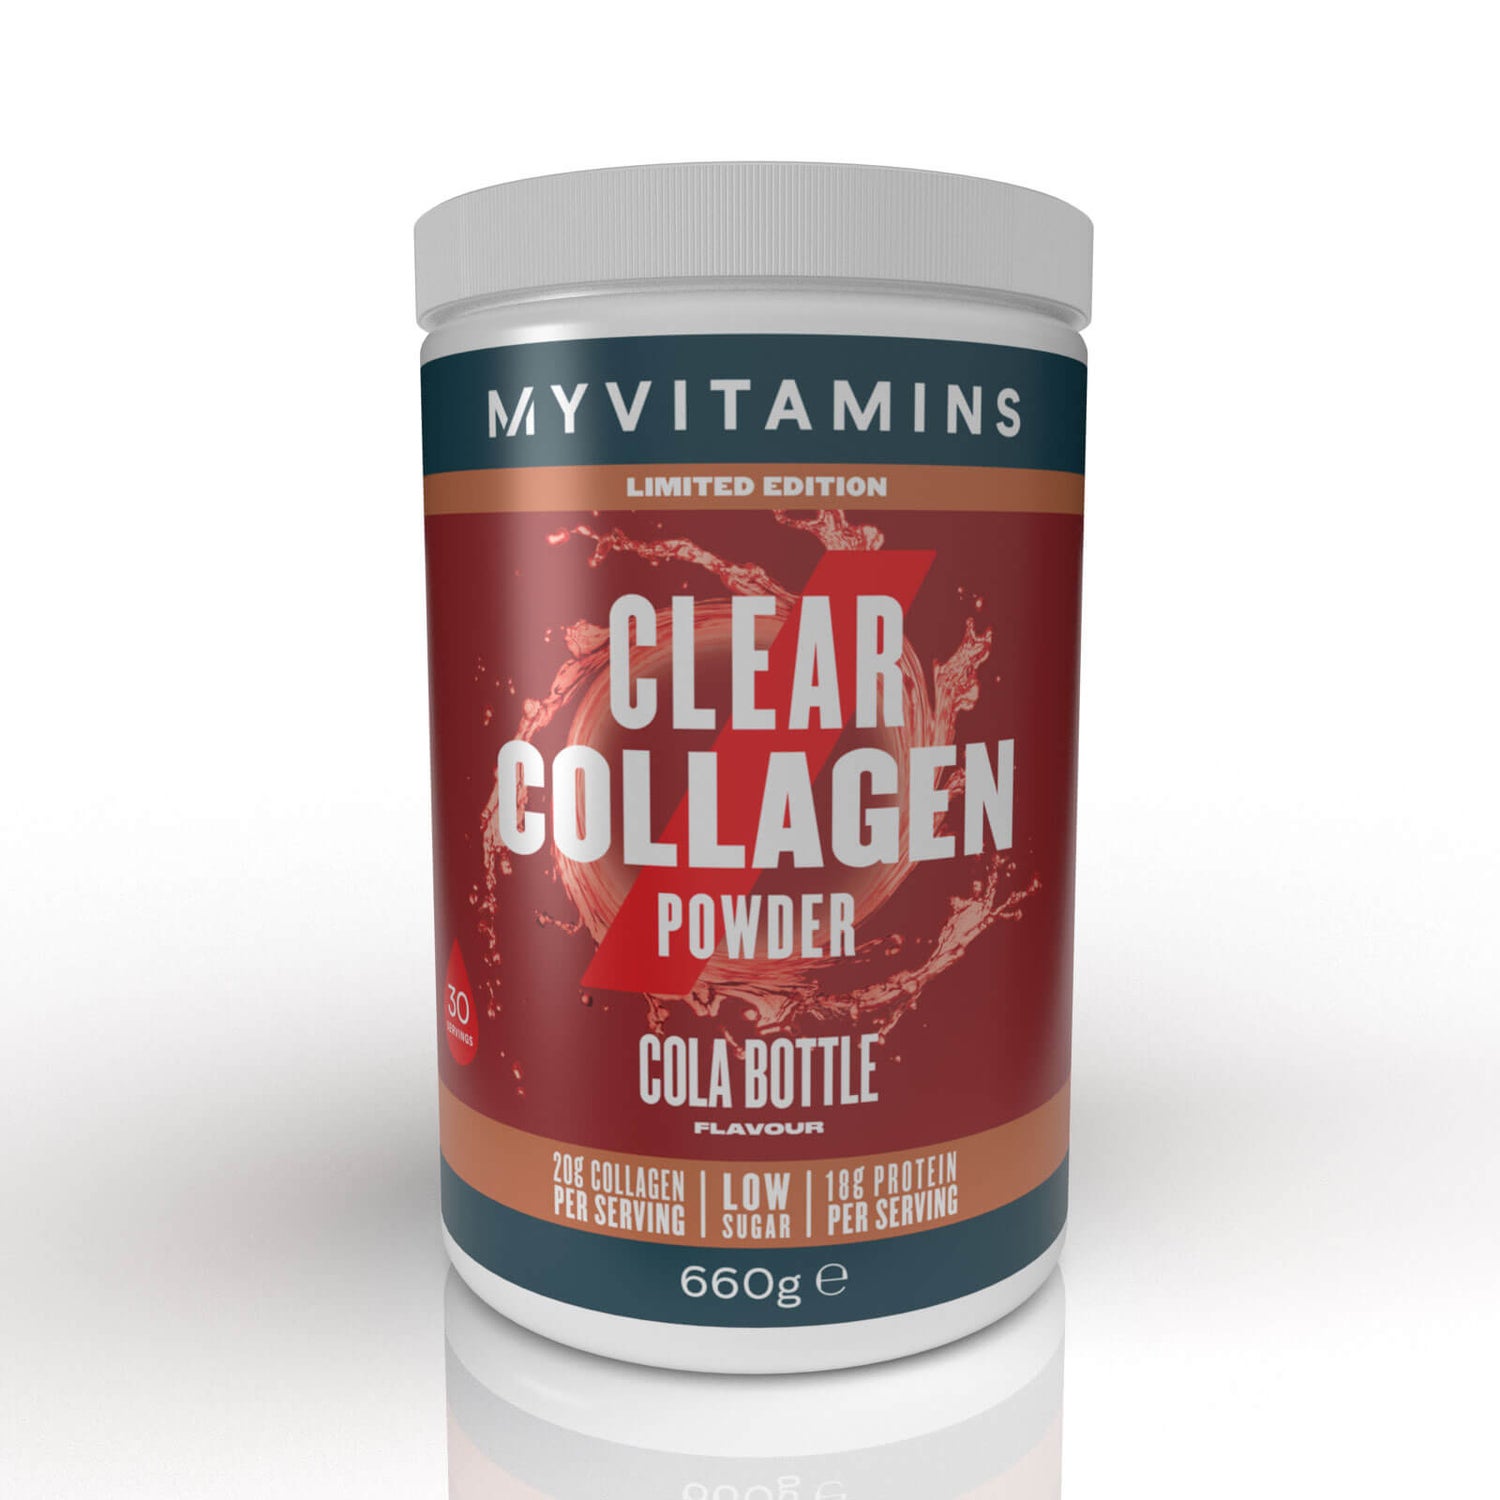 Collagen Powder Cola Bottle